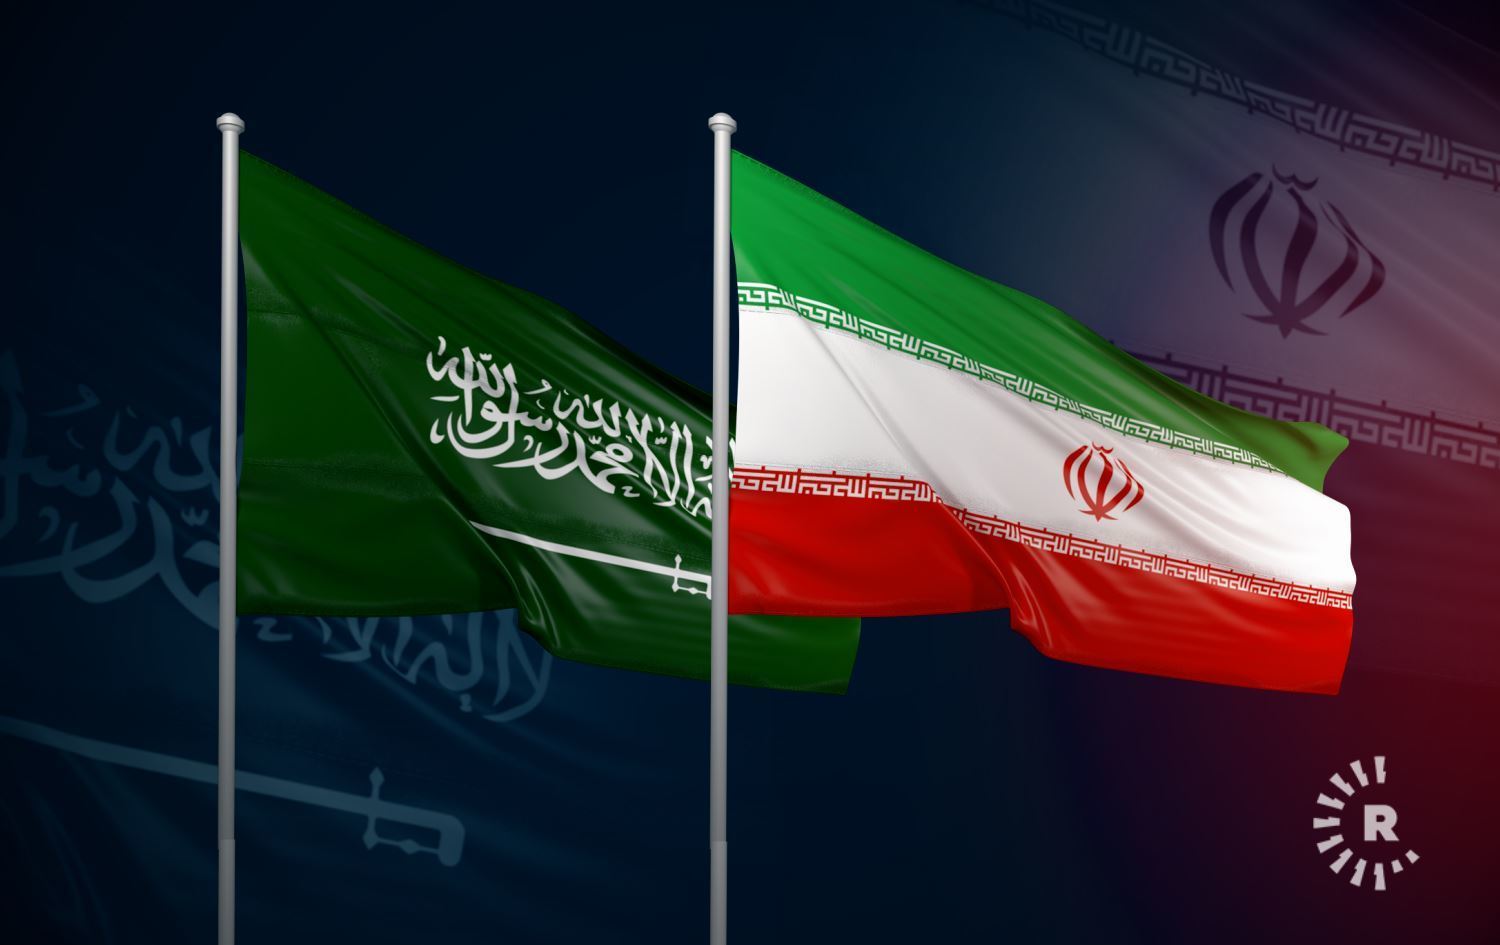 ABD'nin tehdidi sonrası İran'dan Suudi Arabistan'a saldırı açıklaması